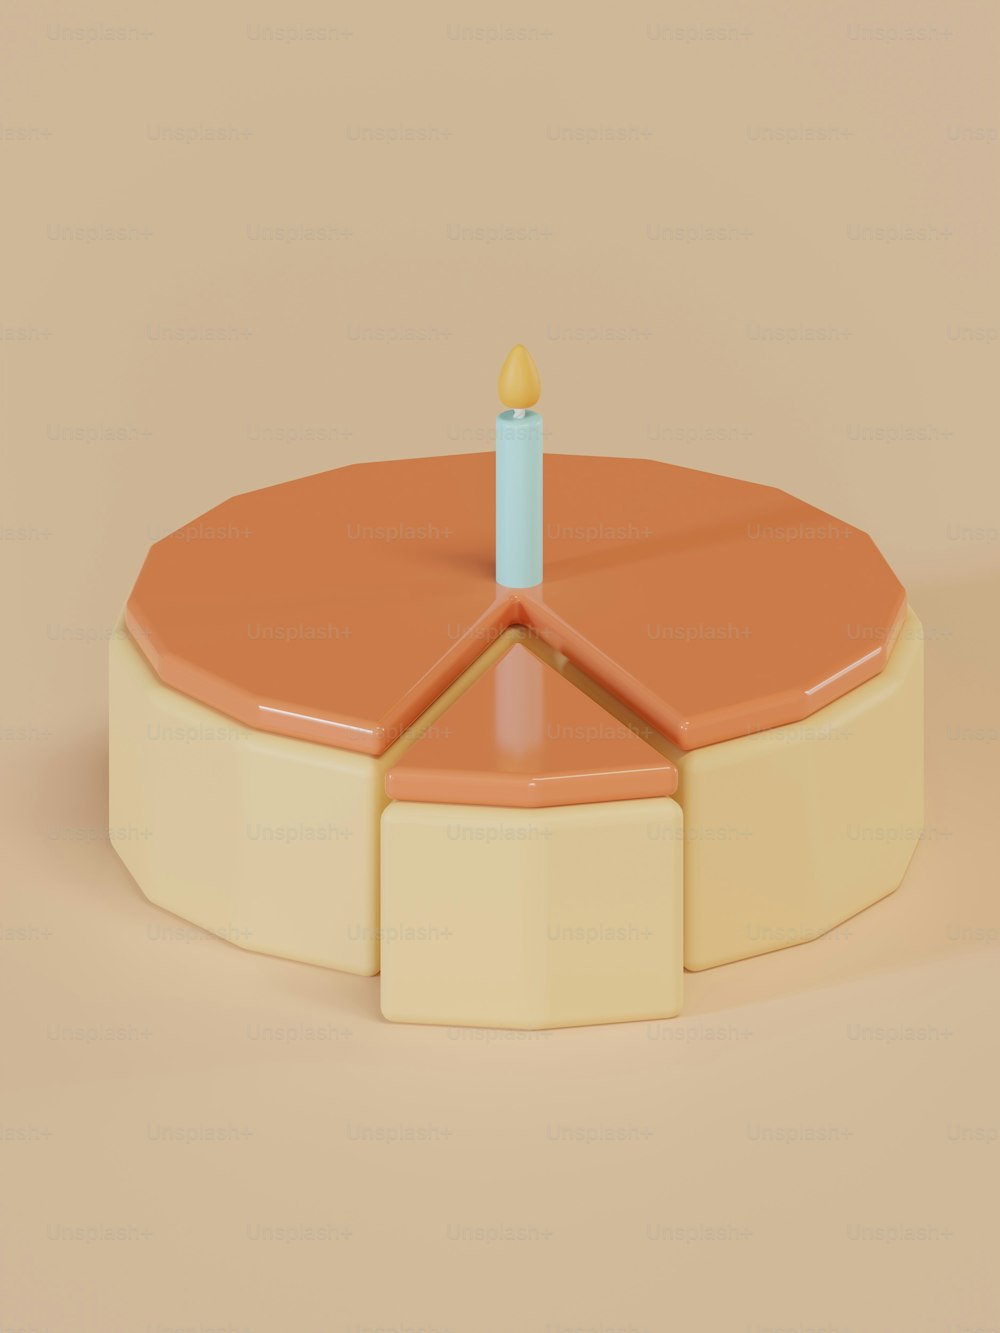 ein runder Gegenstand mit einer Kerze darauf